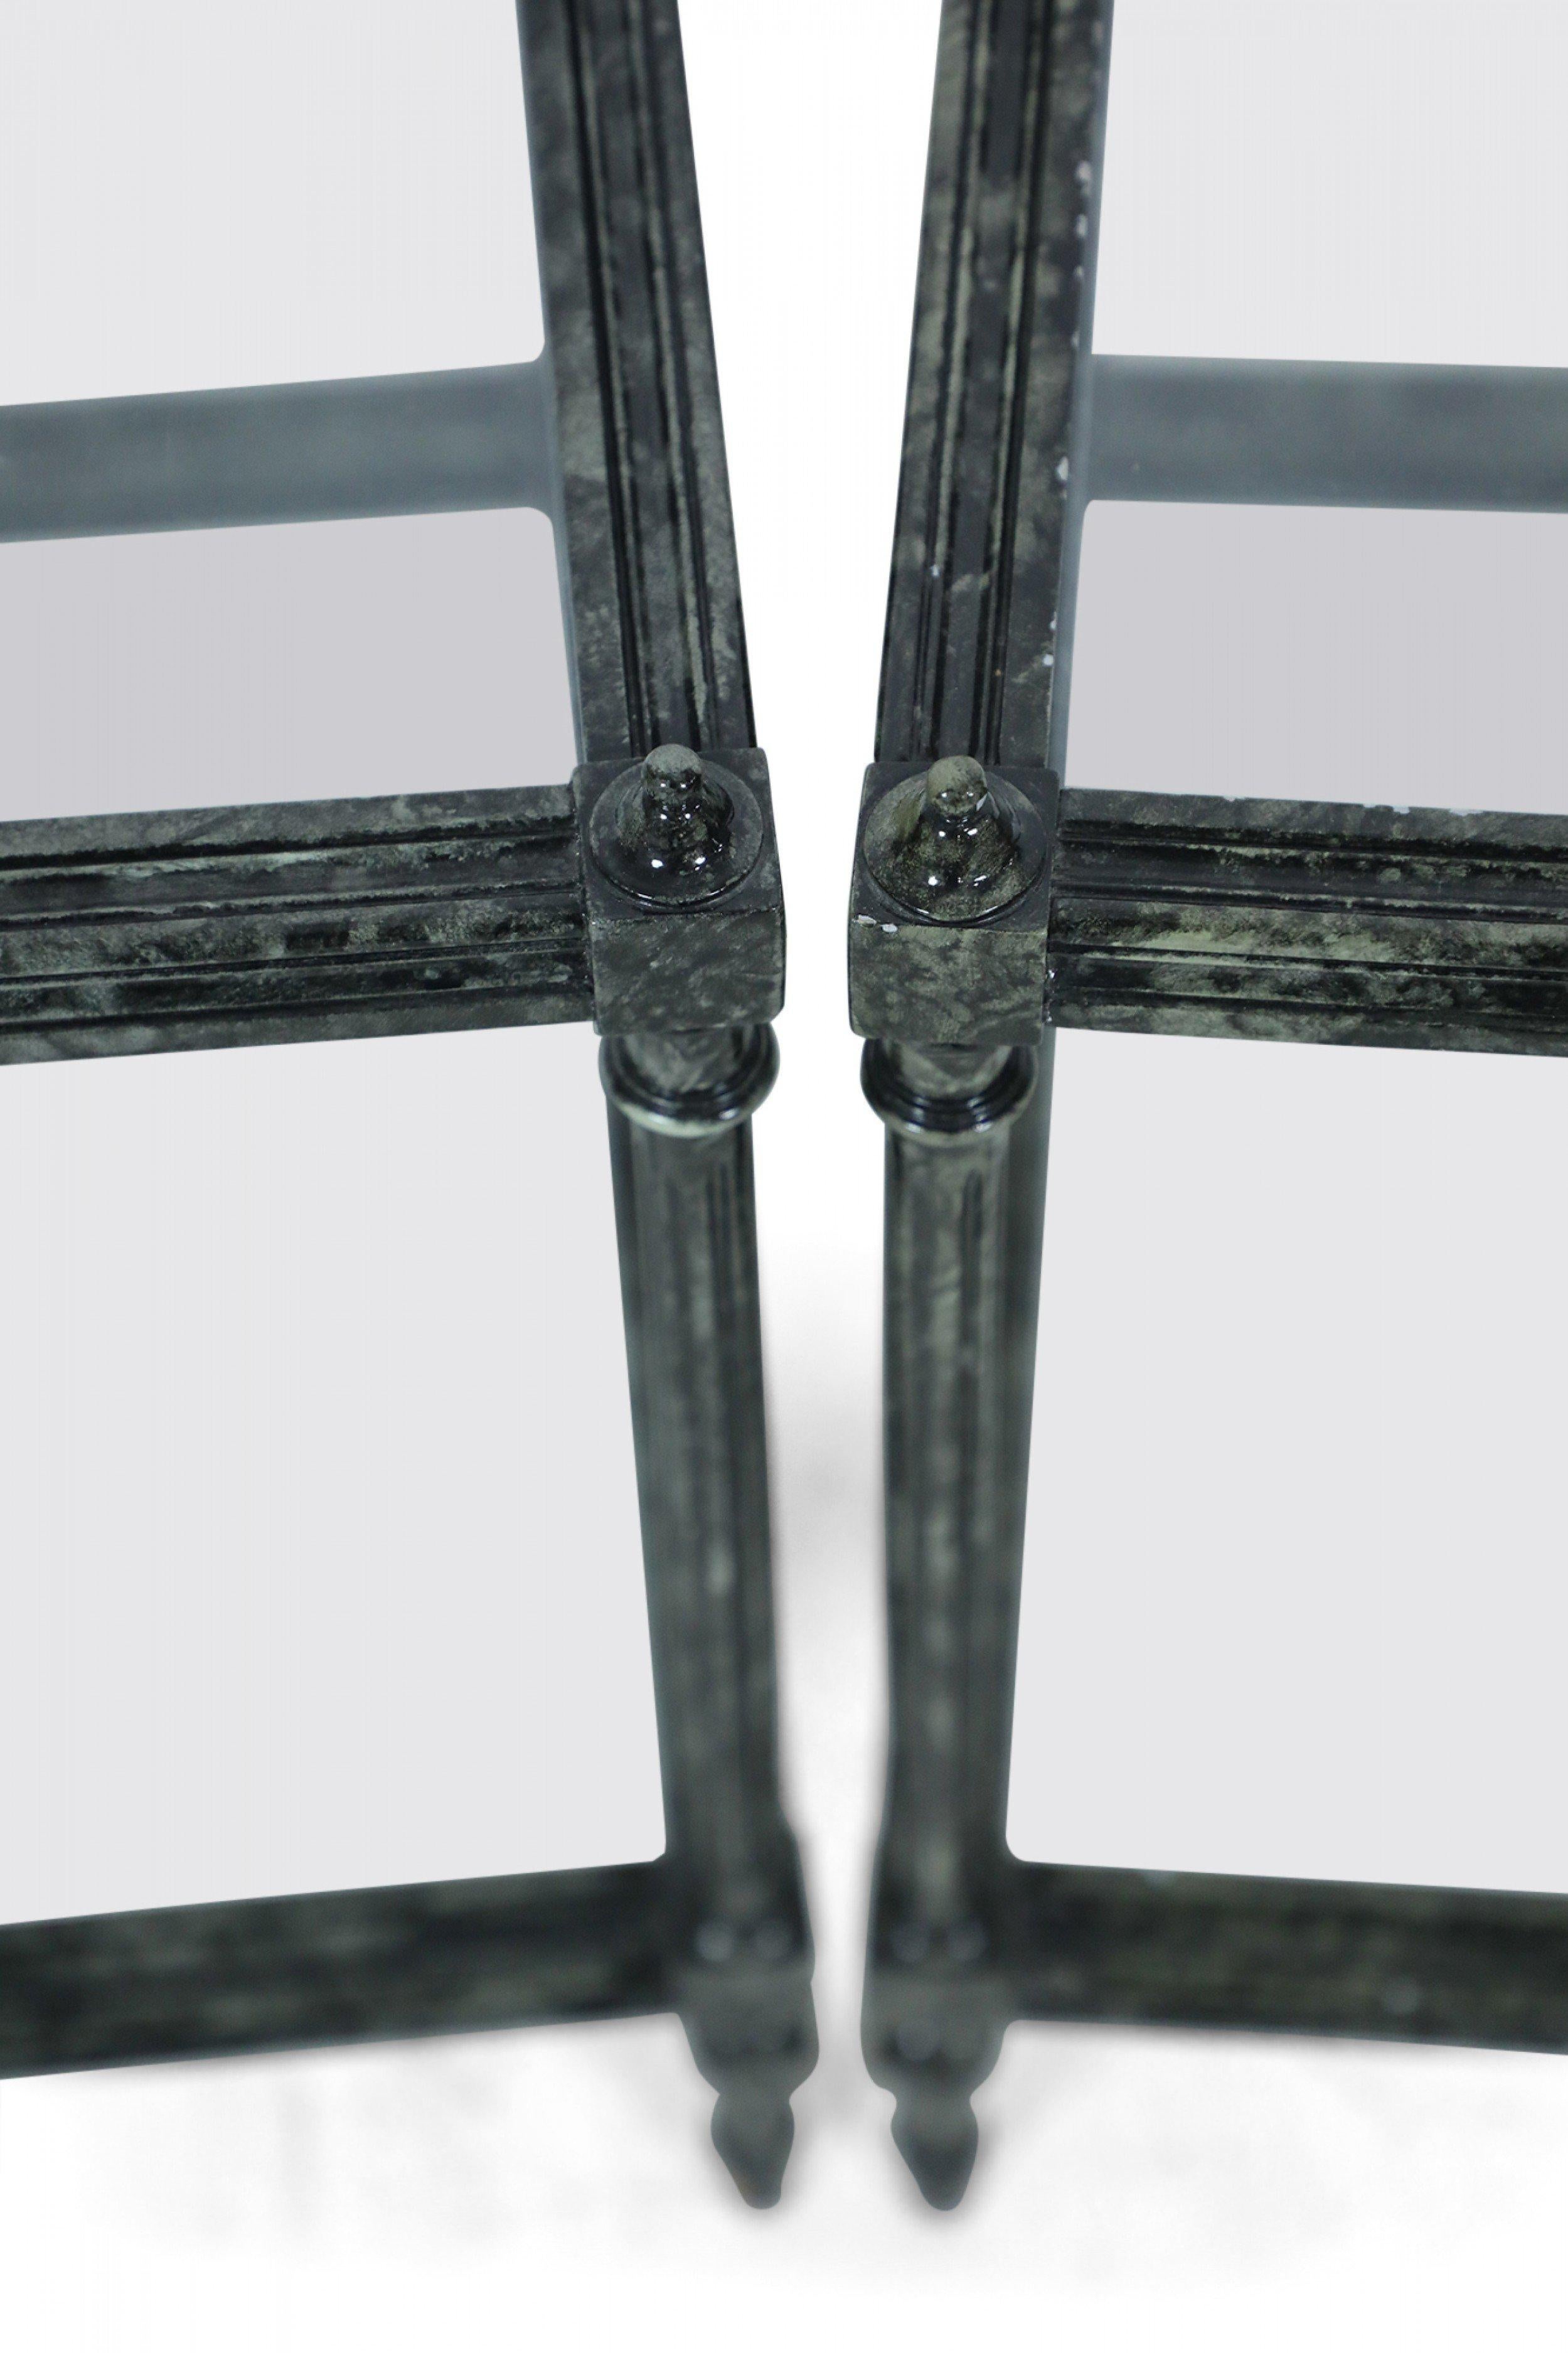 Paire de tables d'appoint contemporaines en bois peint en faux métal, avec des plateaux en verre et une tablette inférieure en verre, soutenues par des pieds en colonne cannelés surmontés de petits fleurons. (Prix par paire).
      